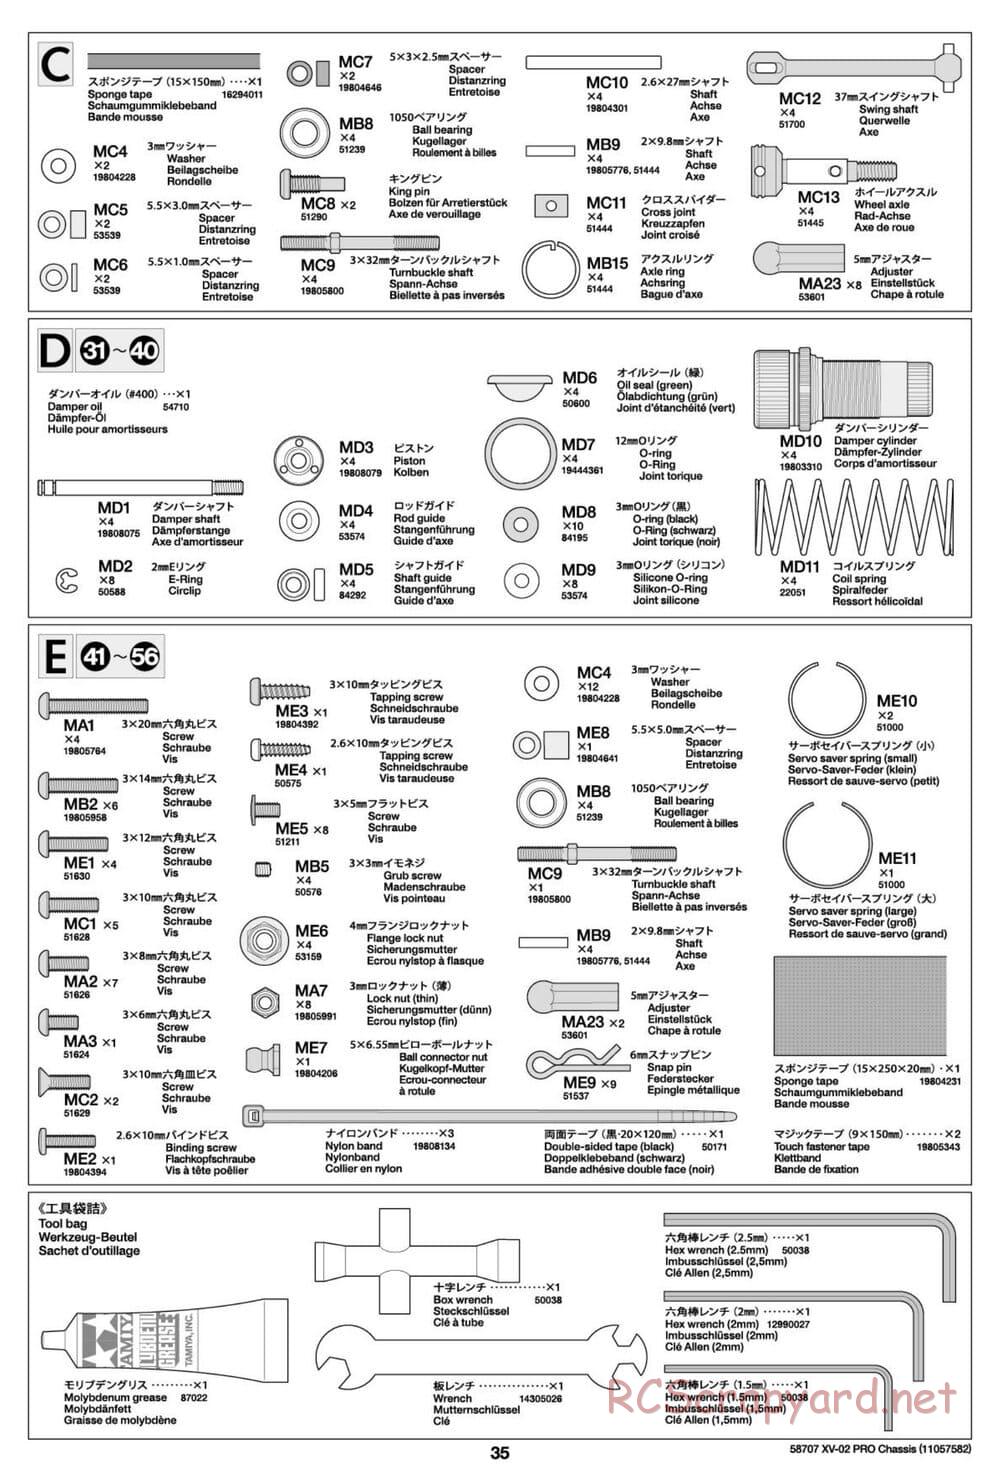 Tamiya - XV-02 Pro Chassis - Manual - Page 35